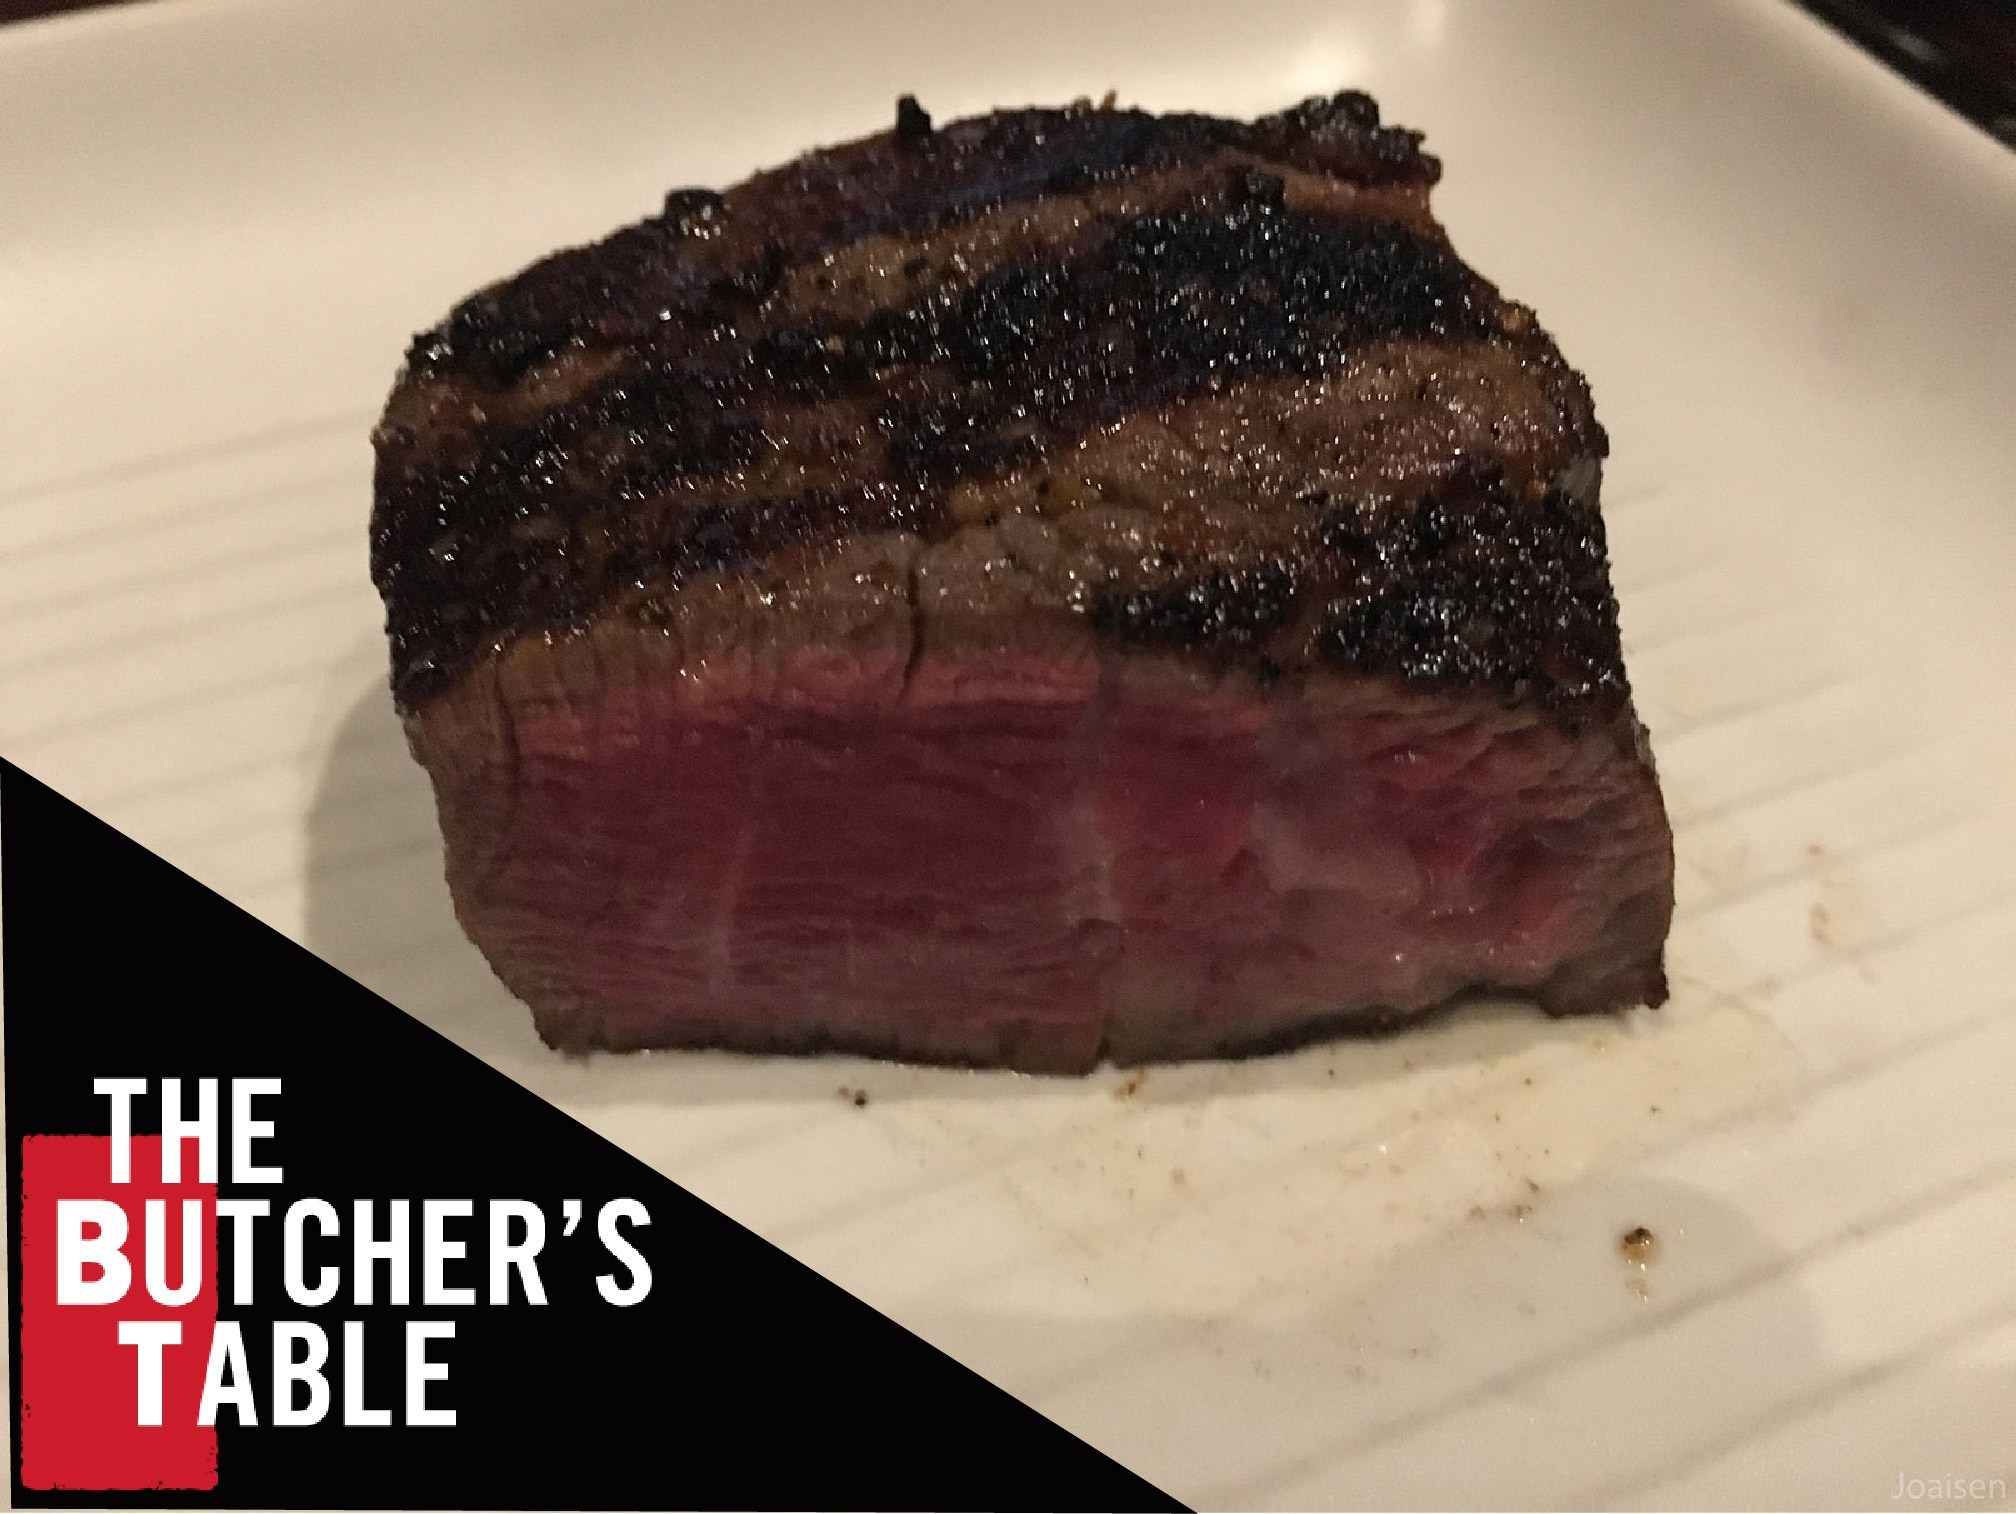 【美國華盛頓】「見島特選」貴鬆鬆的美國和牛！西雅圖「The Butcher's Table」吃牛排！